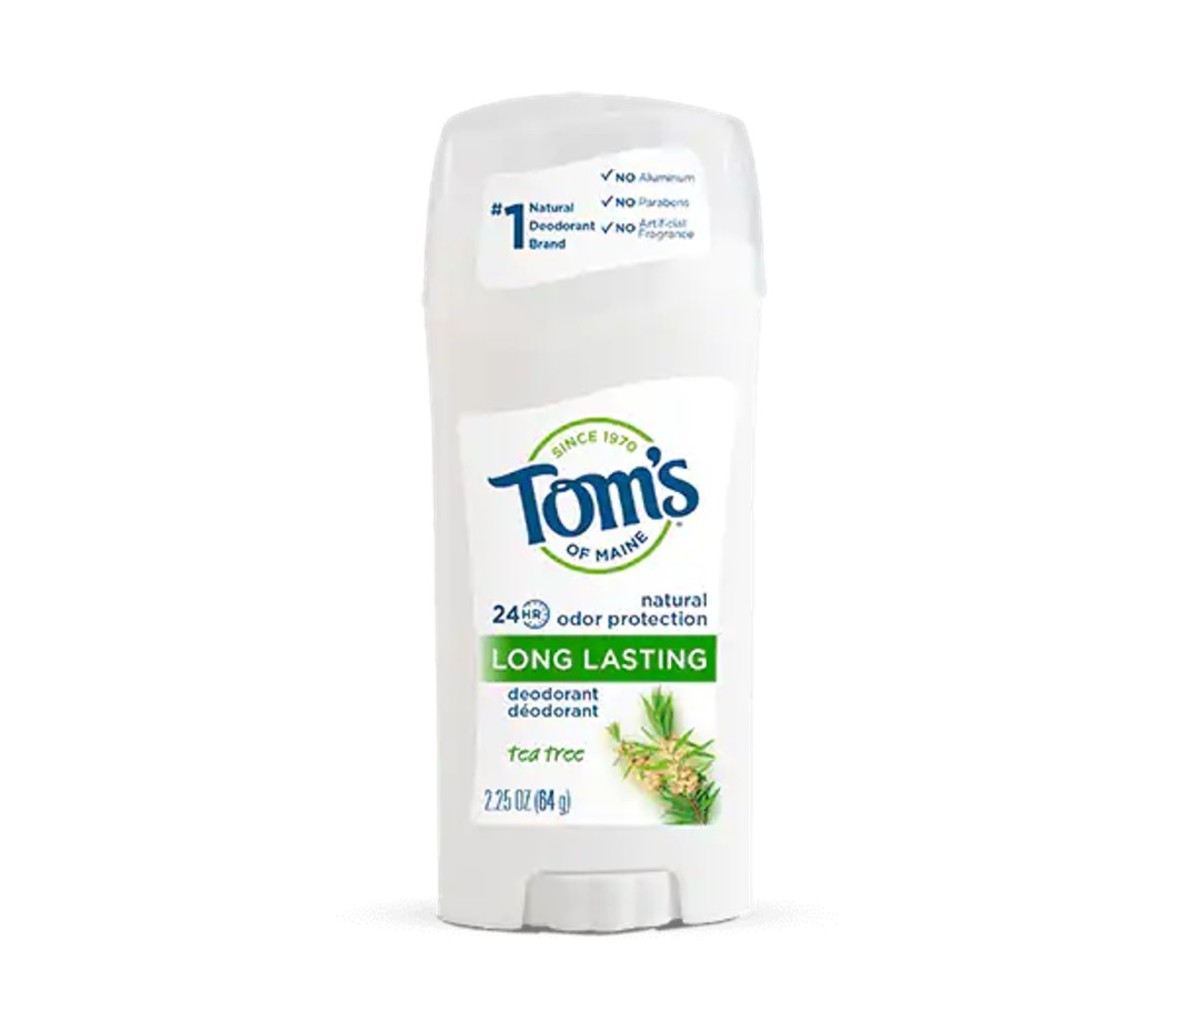 Tom’s of Maine Long Lasting Tea Tree Deodorant